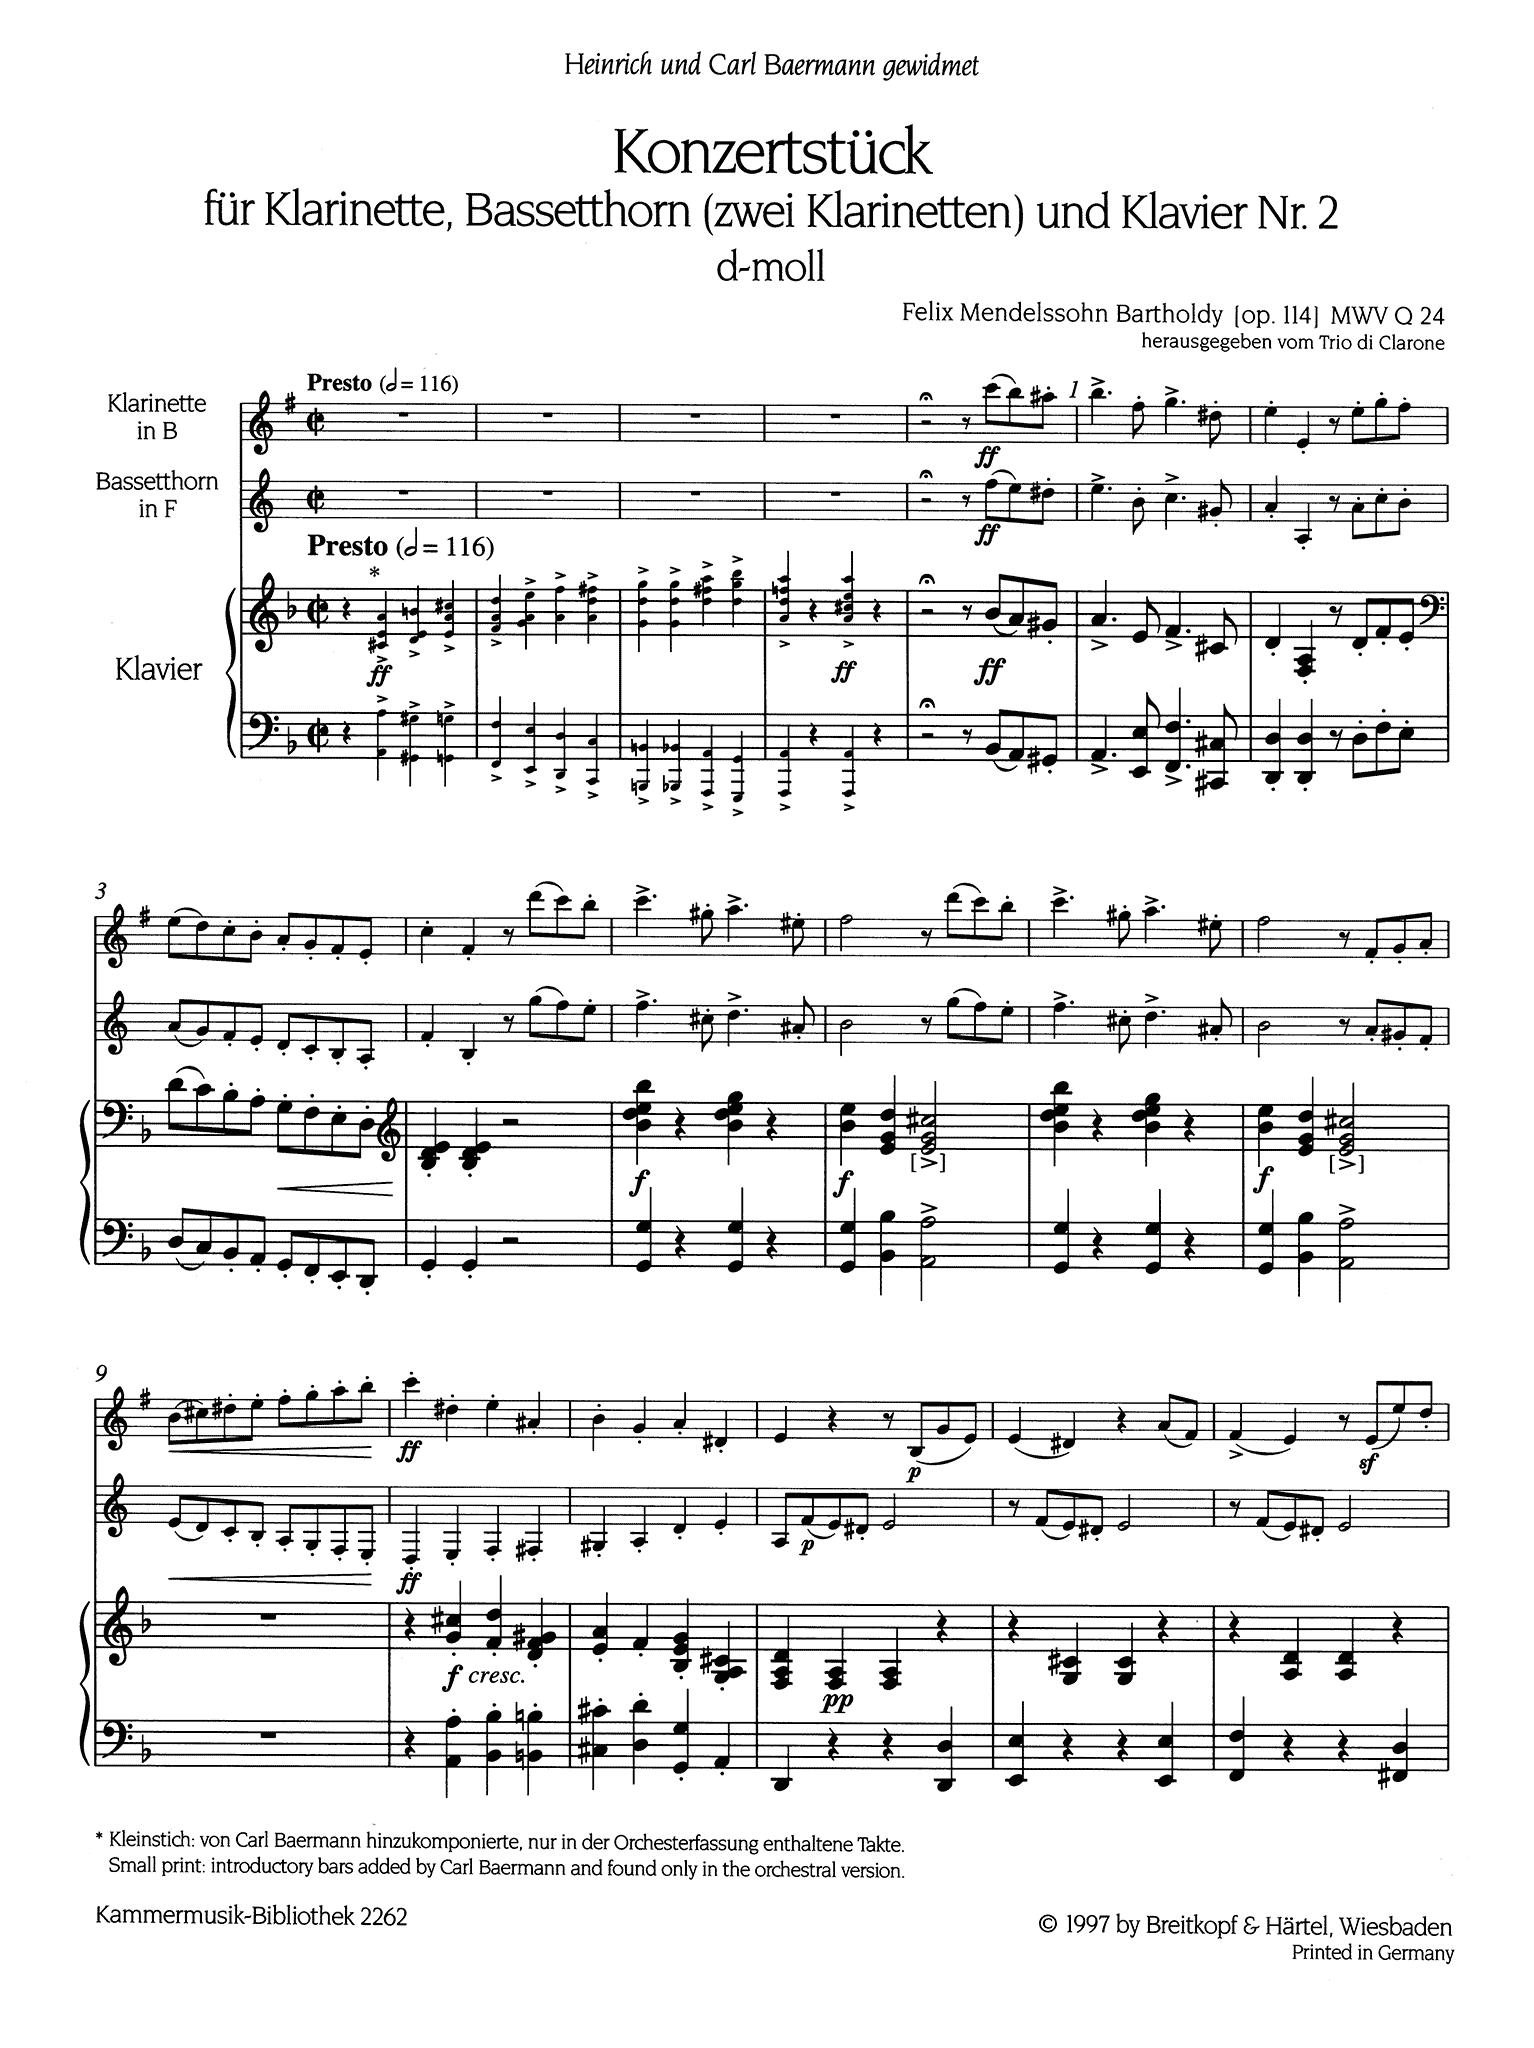 Concertpiece No. 2 in D Minor, Op. 114 Score